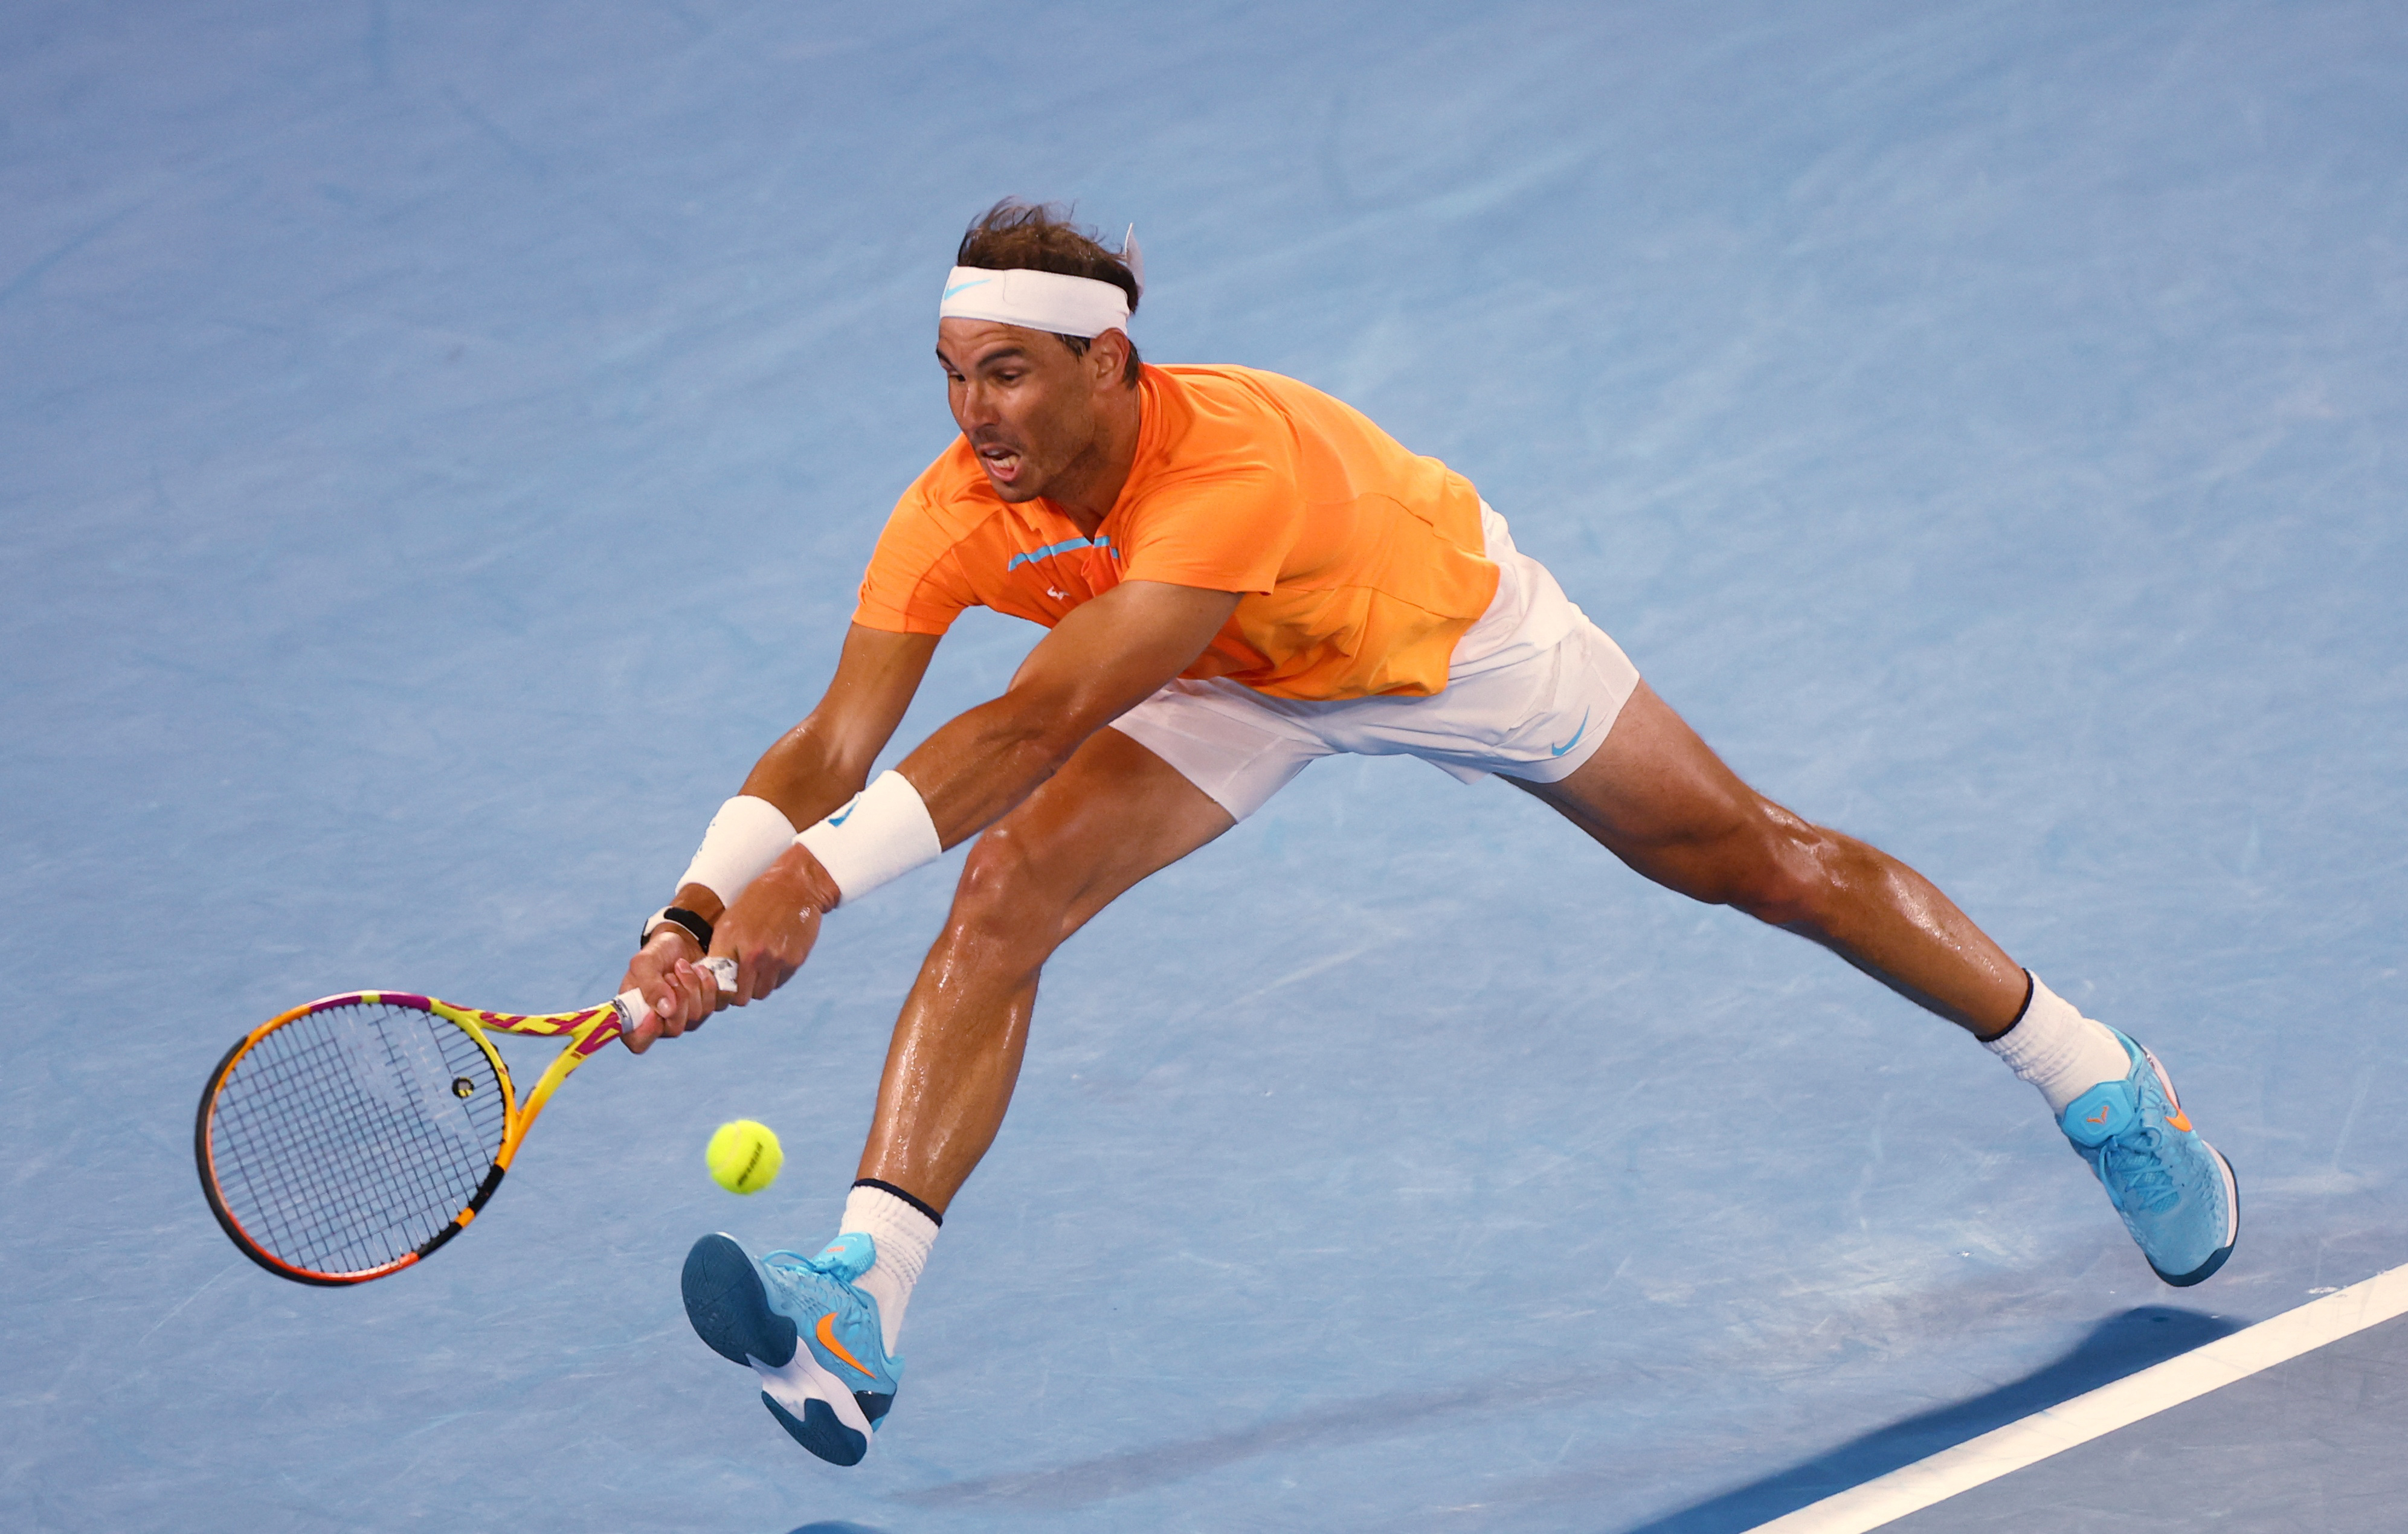 Nadal in action in Australia (REUTERS / Hannah Mckay)